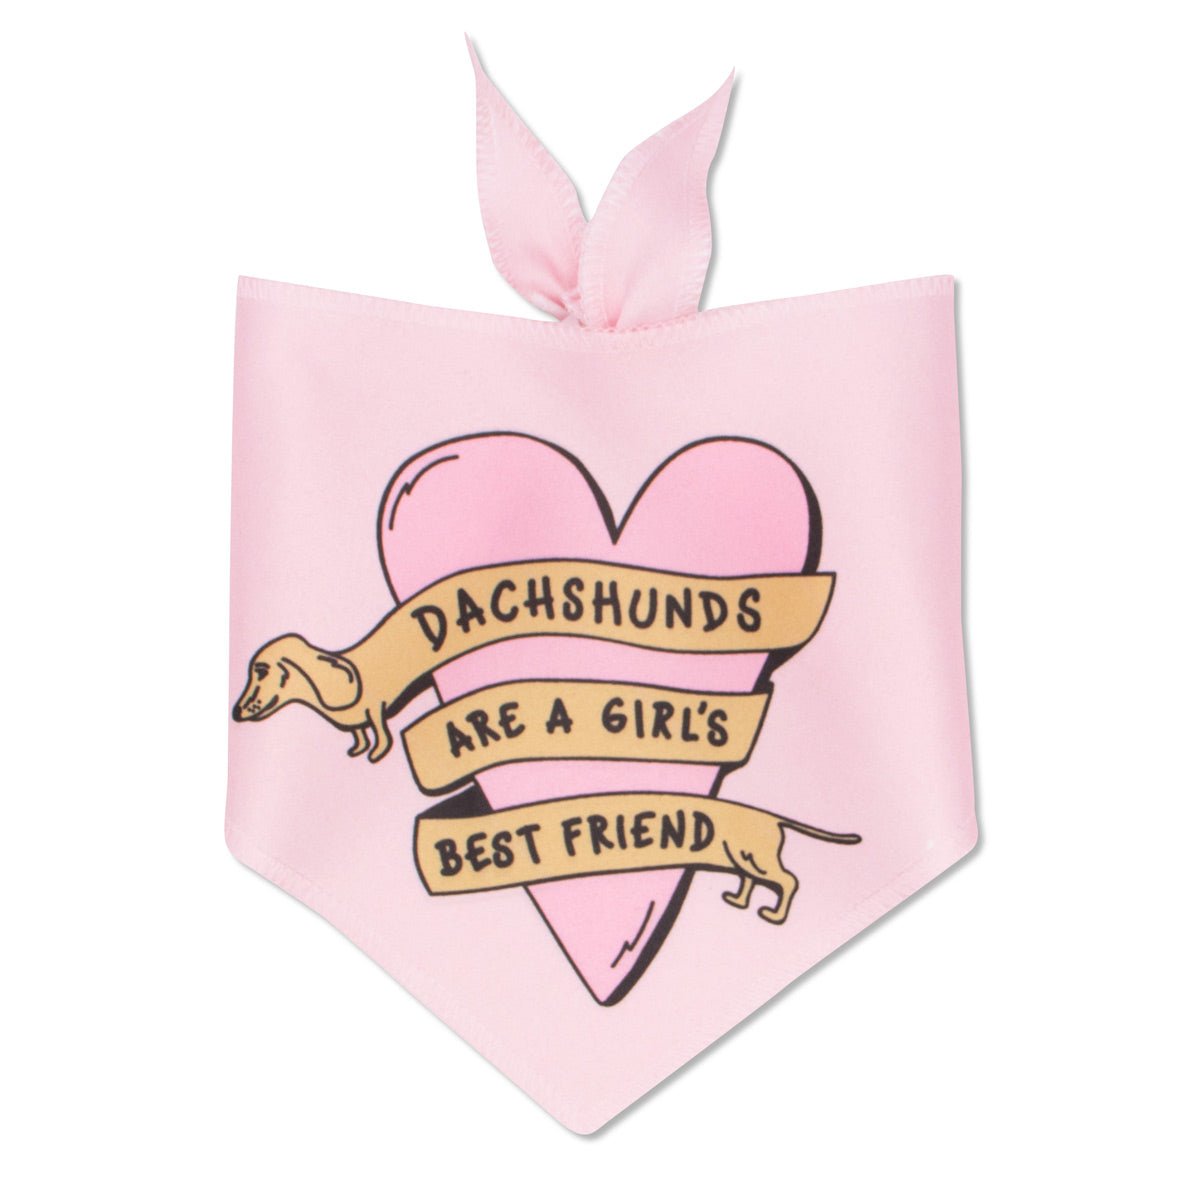 dachshunds are a girl's best friend dog bandana - bean goods